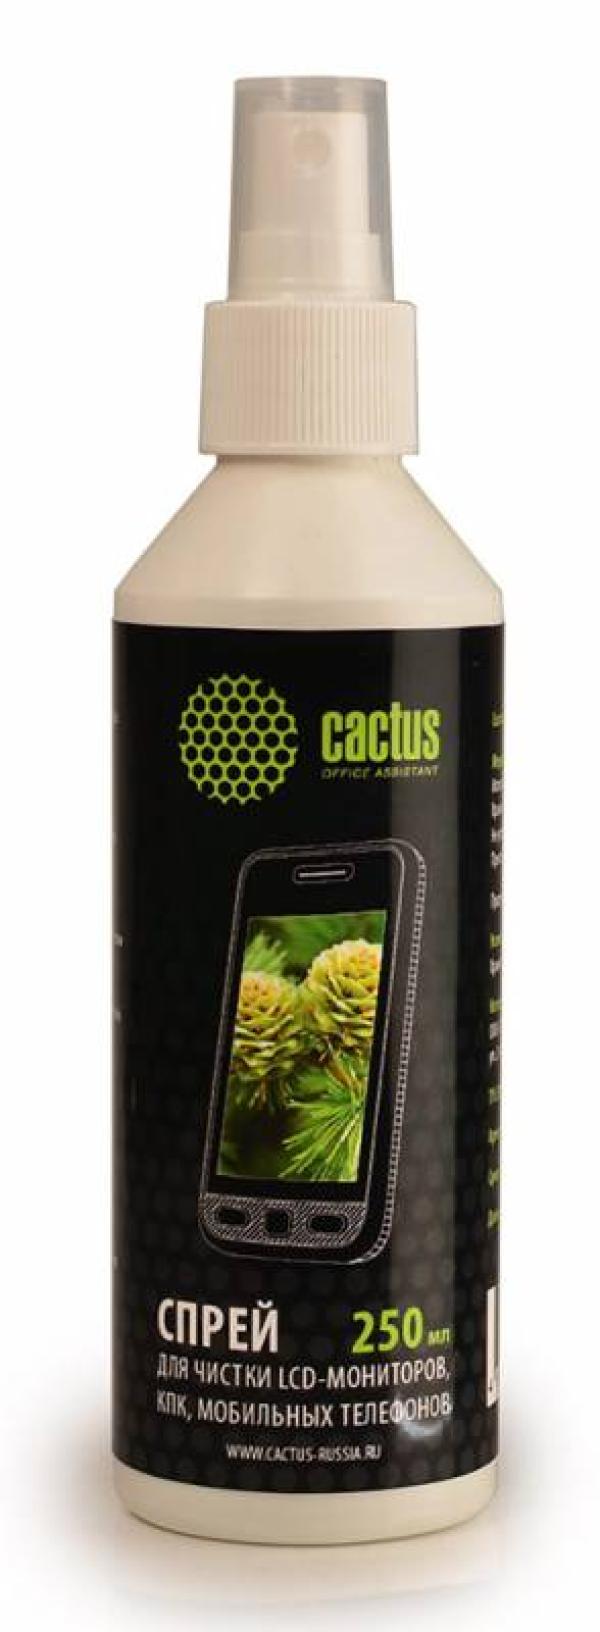 Средство для чистки мониторов ЖК Cactus CS-S3002, спрей, 250мл